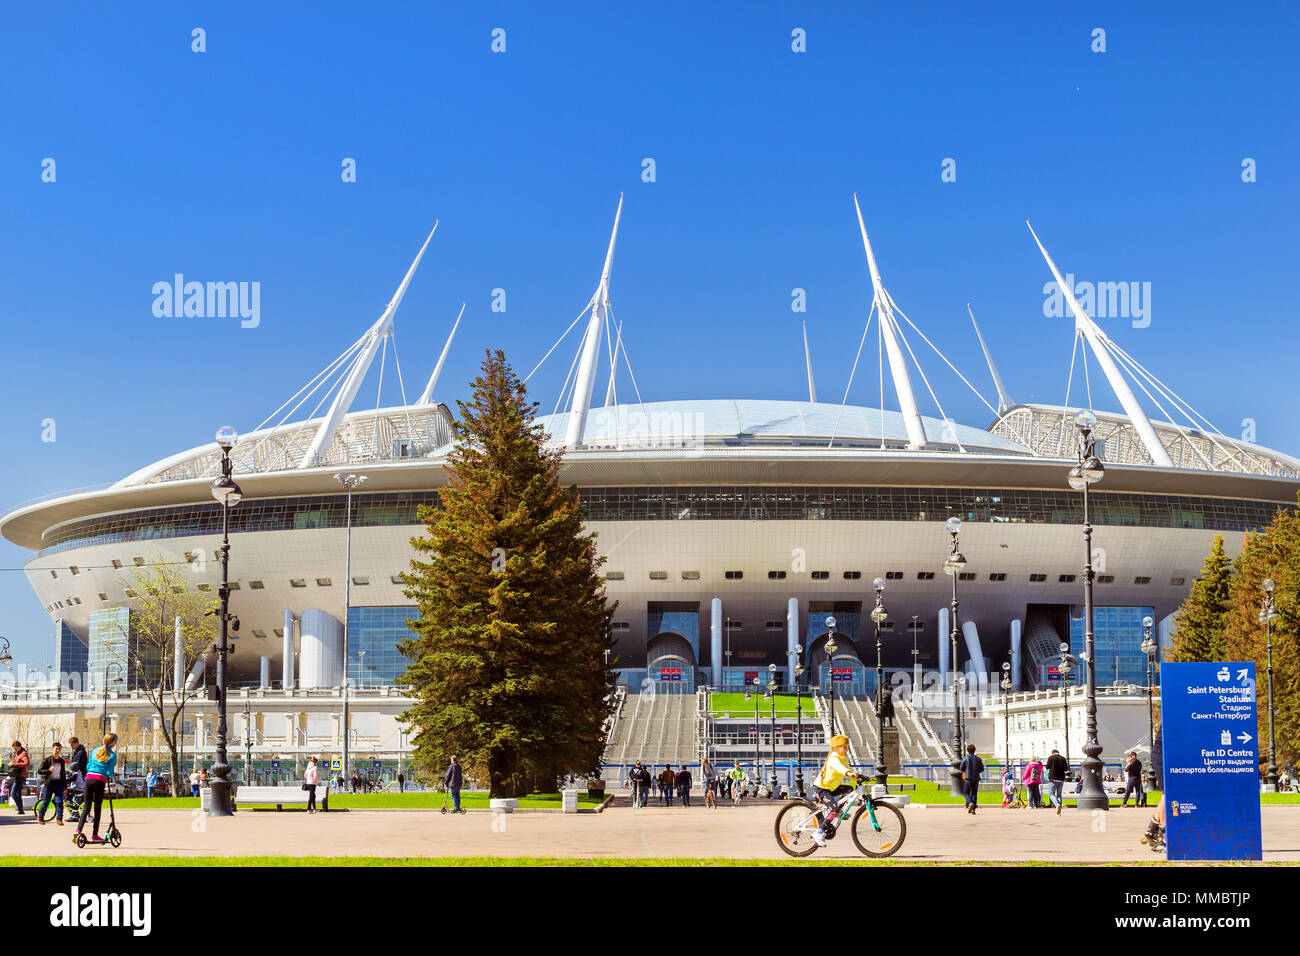 Saint-pétersbourg, Russie - 9 mai 2018 : 21e Coupe du monde de la FIFA 2018. Stadium Saint-petersbourg. Zenit arena football stadium sur Krestovsky ouvert en 2017 FIF Banque D'Images